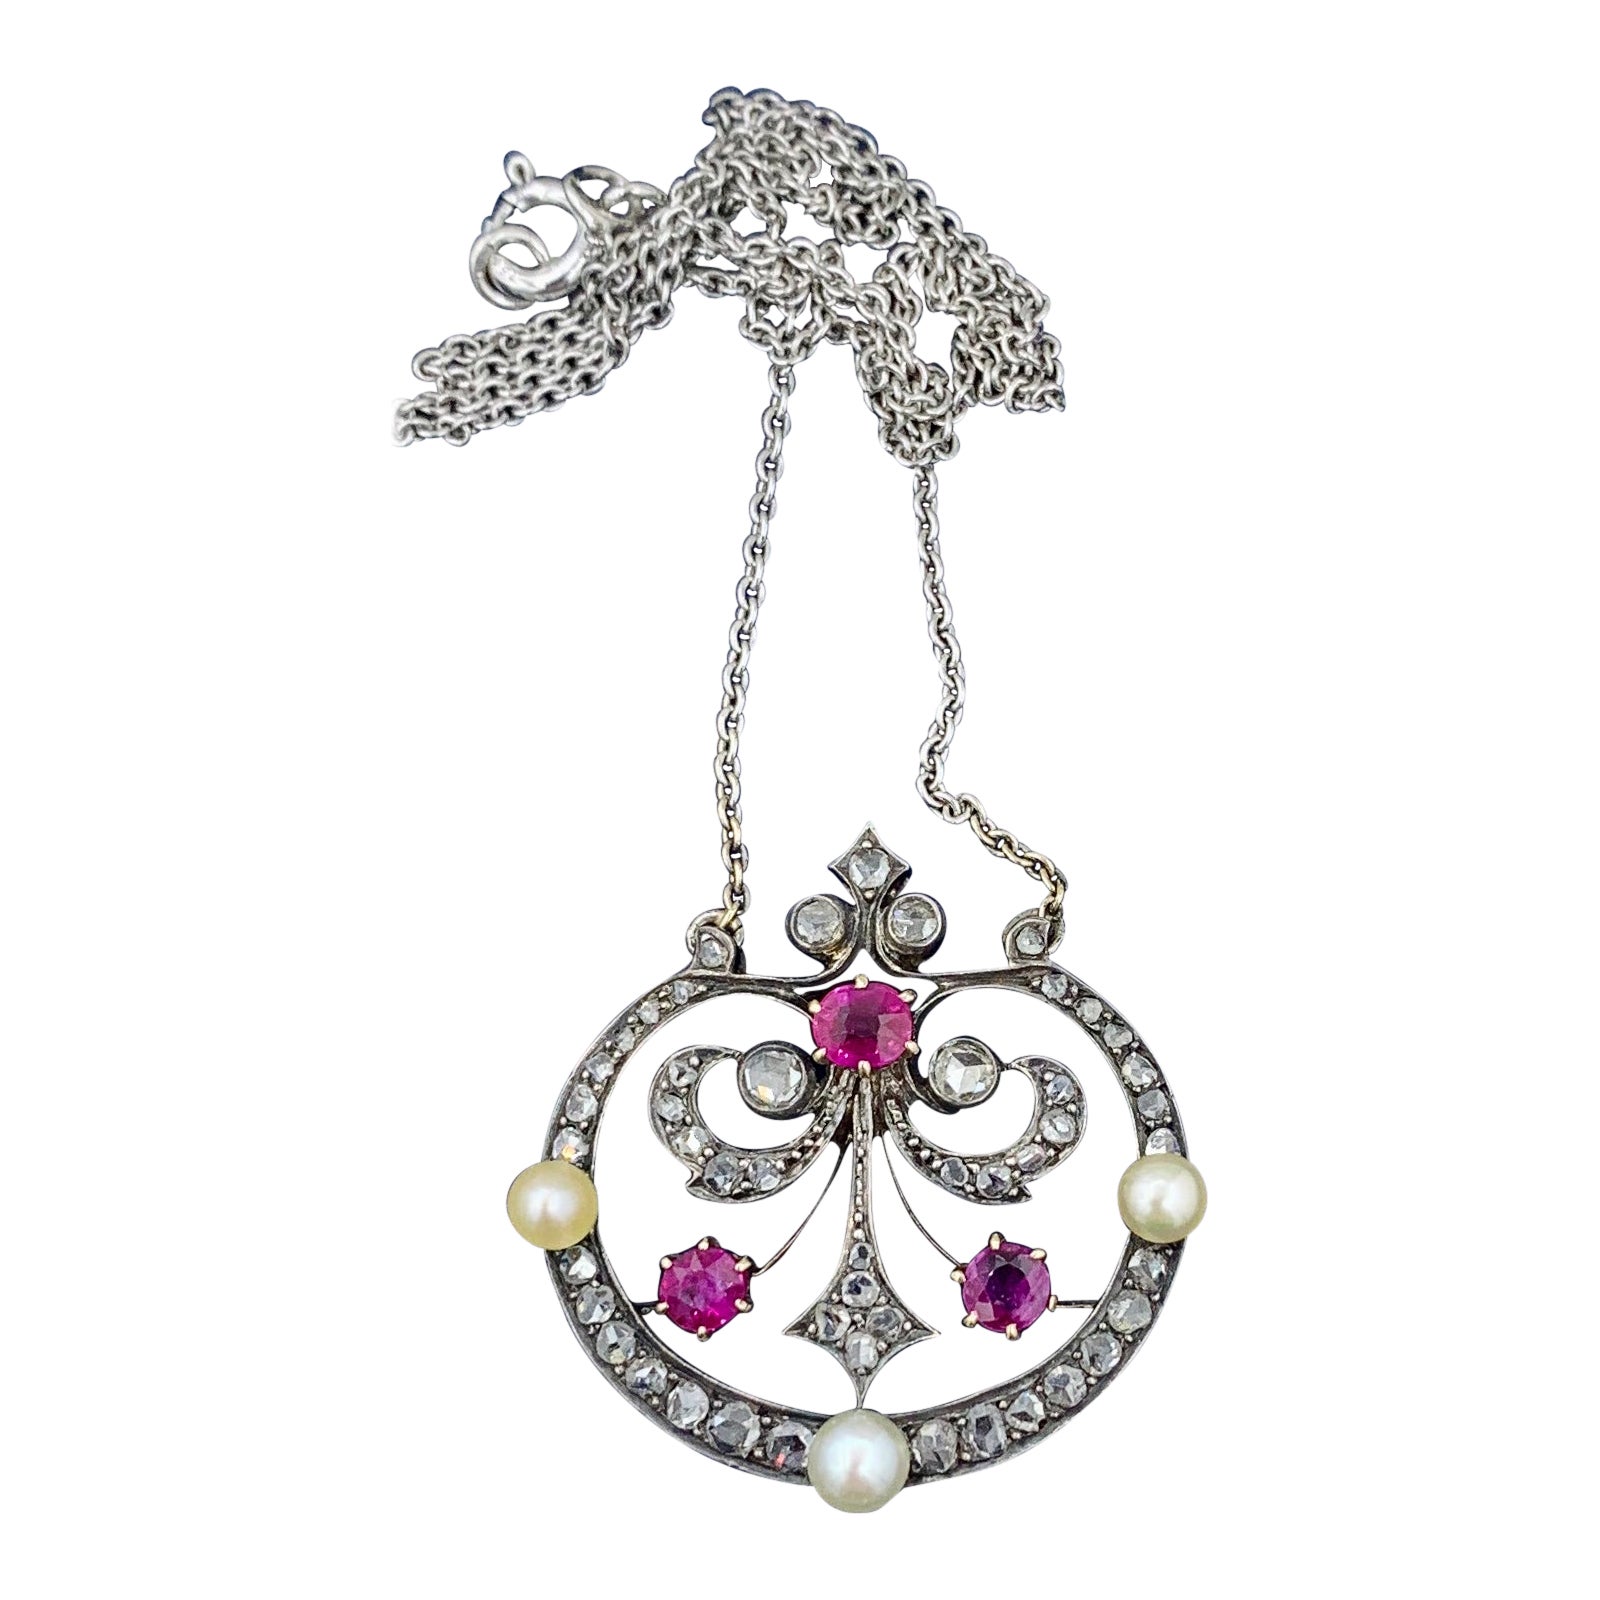 Collier français ancien en rubis de Birmanie de couleur sang de pigeon et diamants taille rose, certifié GIA